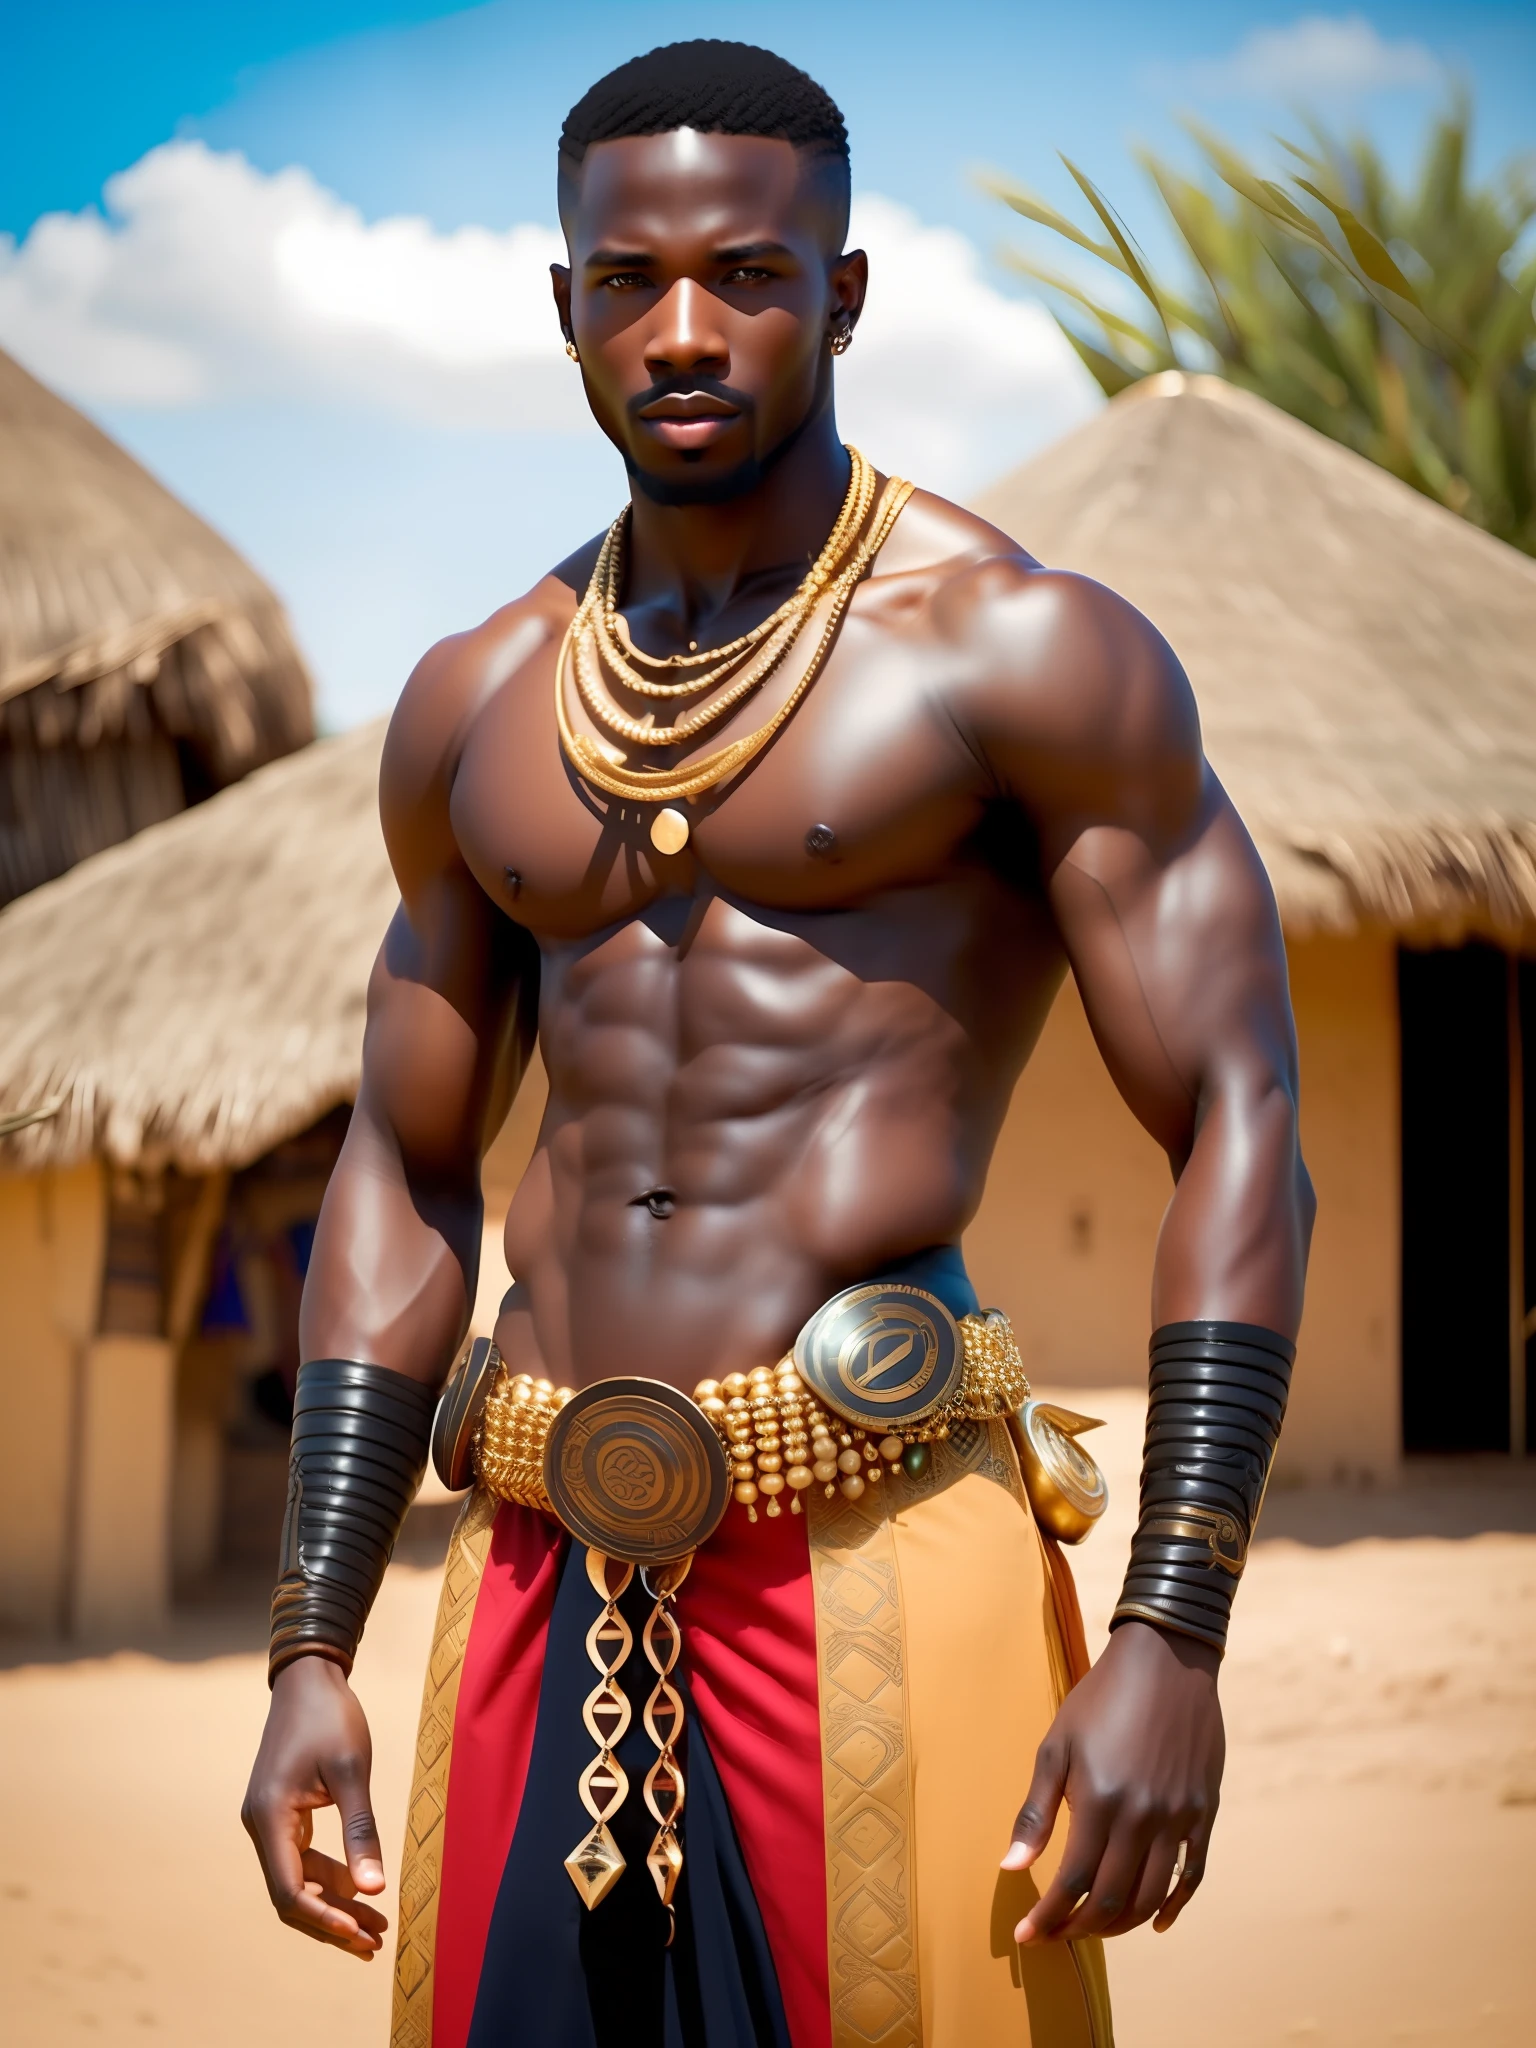 verdammt_Science-Fiction, verdammt_Science-Fiction_v2, Porträt eines jungen, muskulöser, sehr schöner und attraktiver afrikanischer Krieger, vor einem afrikanischen Dorf, farbenfrohe Kleidung und goldener afrikanischer Schmuck, Nahaufnahme, königliche Pose und Haltung. verdammt_Kino_v2.